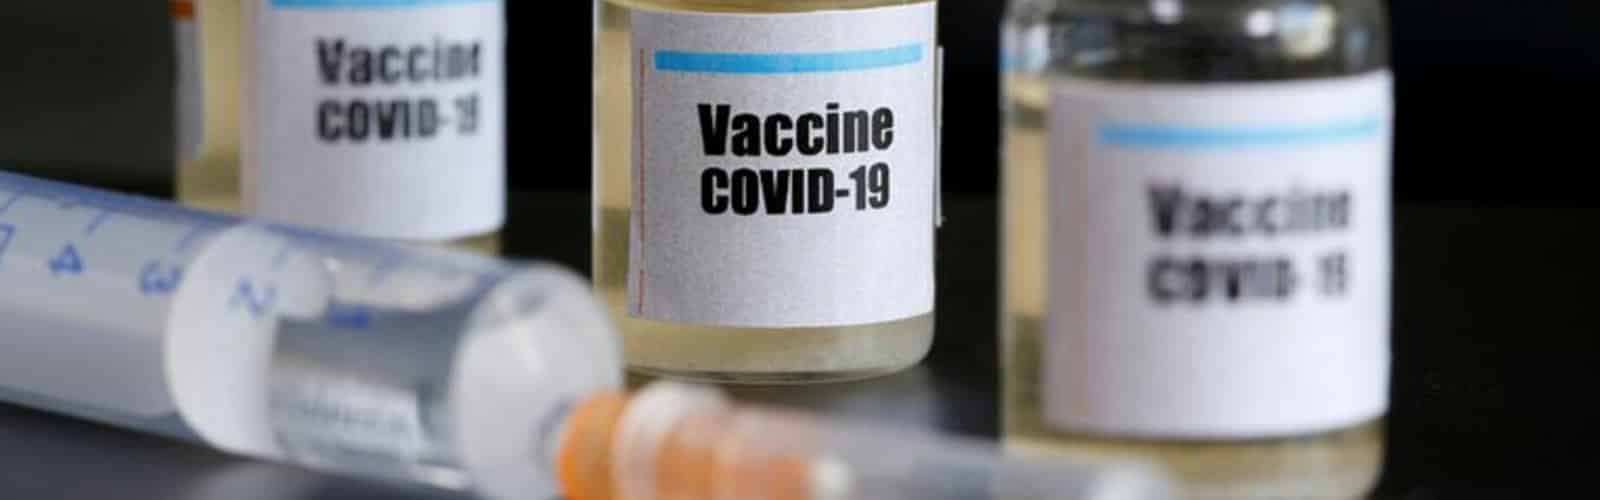 12 preguntas sobre la llegada de la vacuna contra el covid-19 a Guatemala